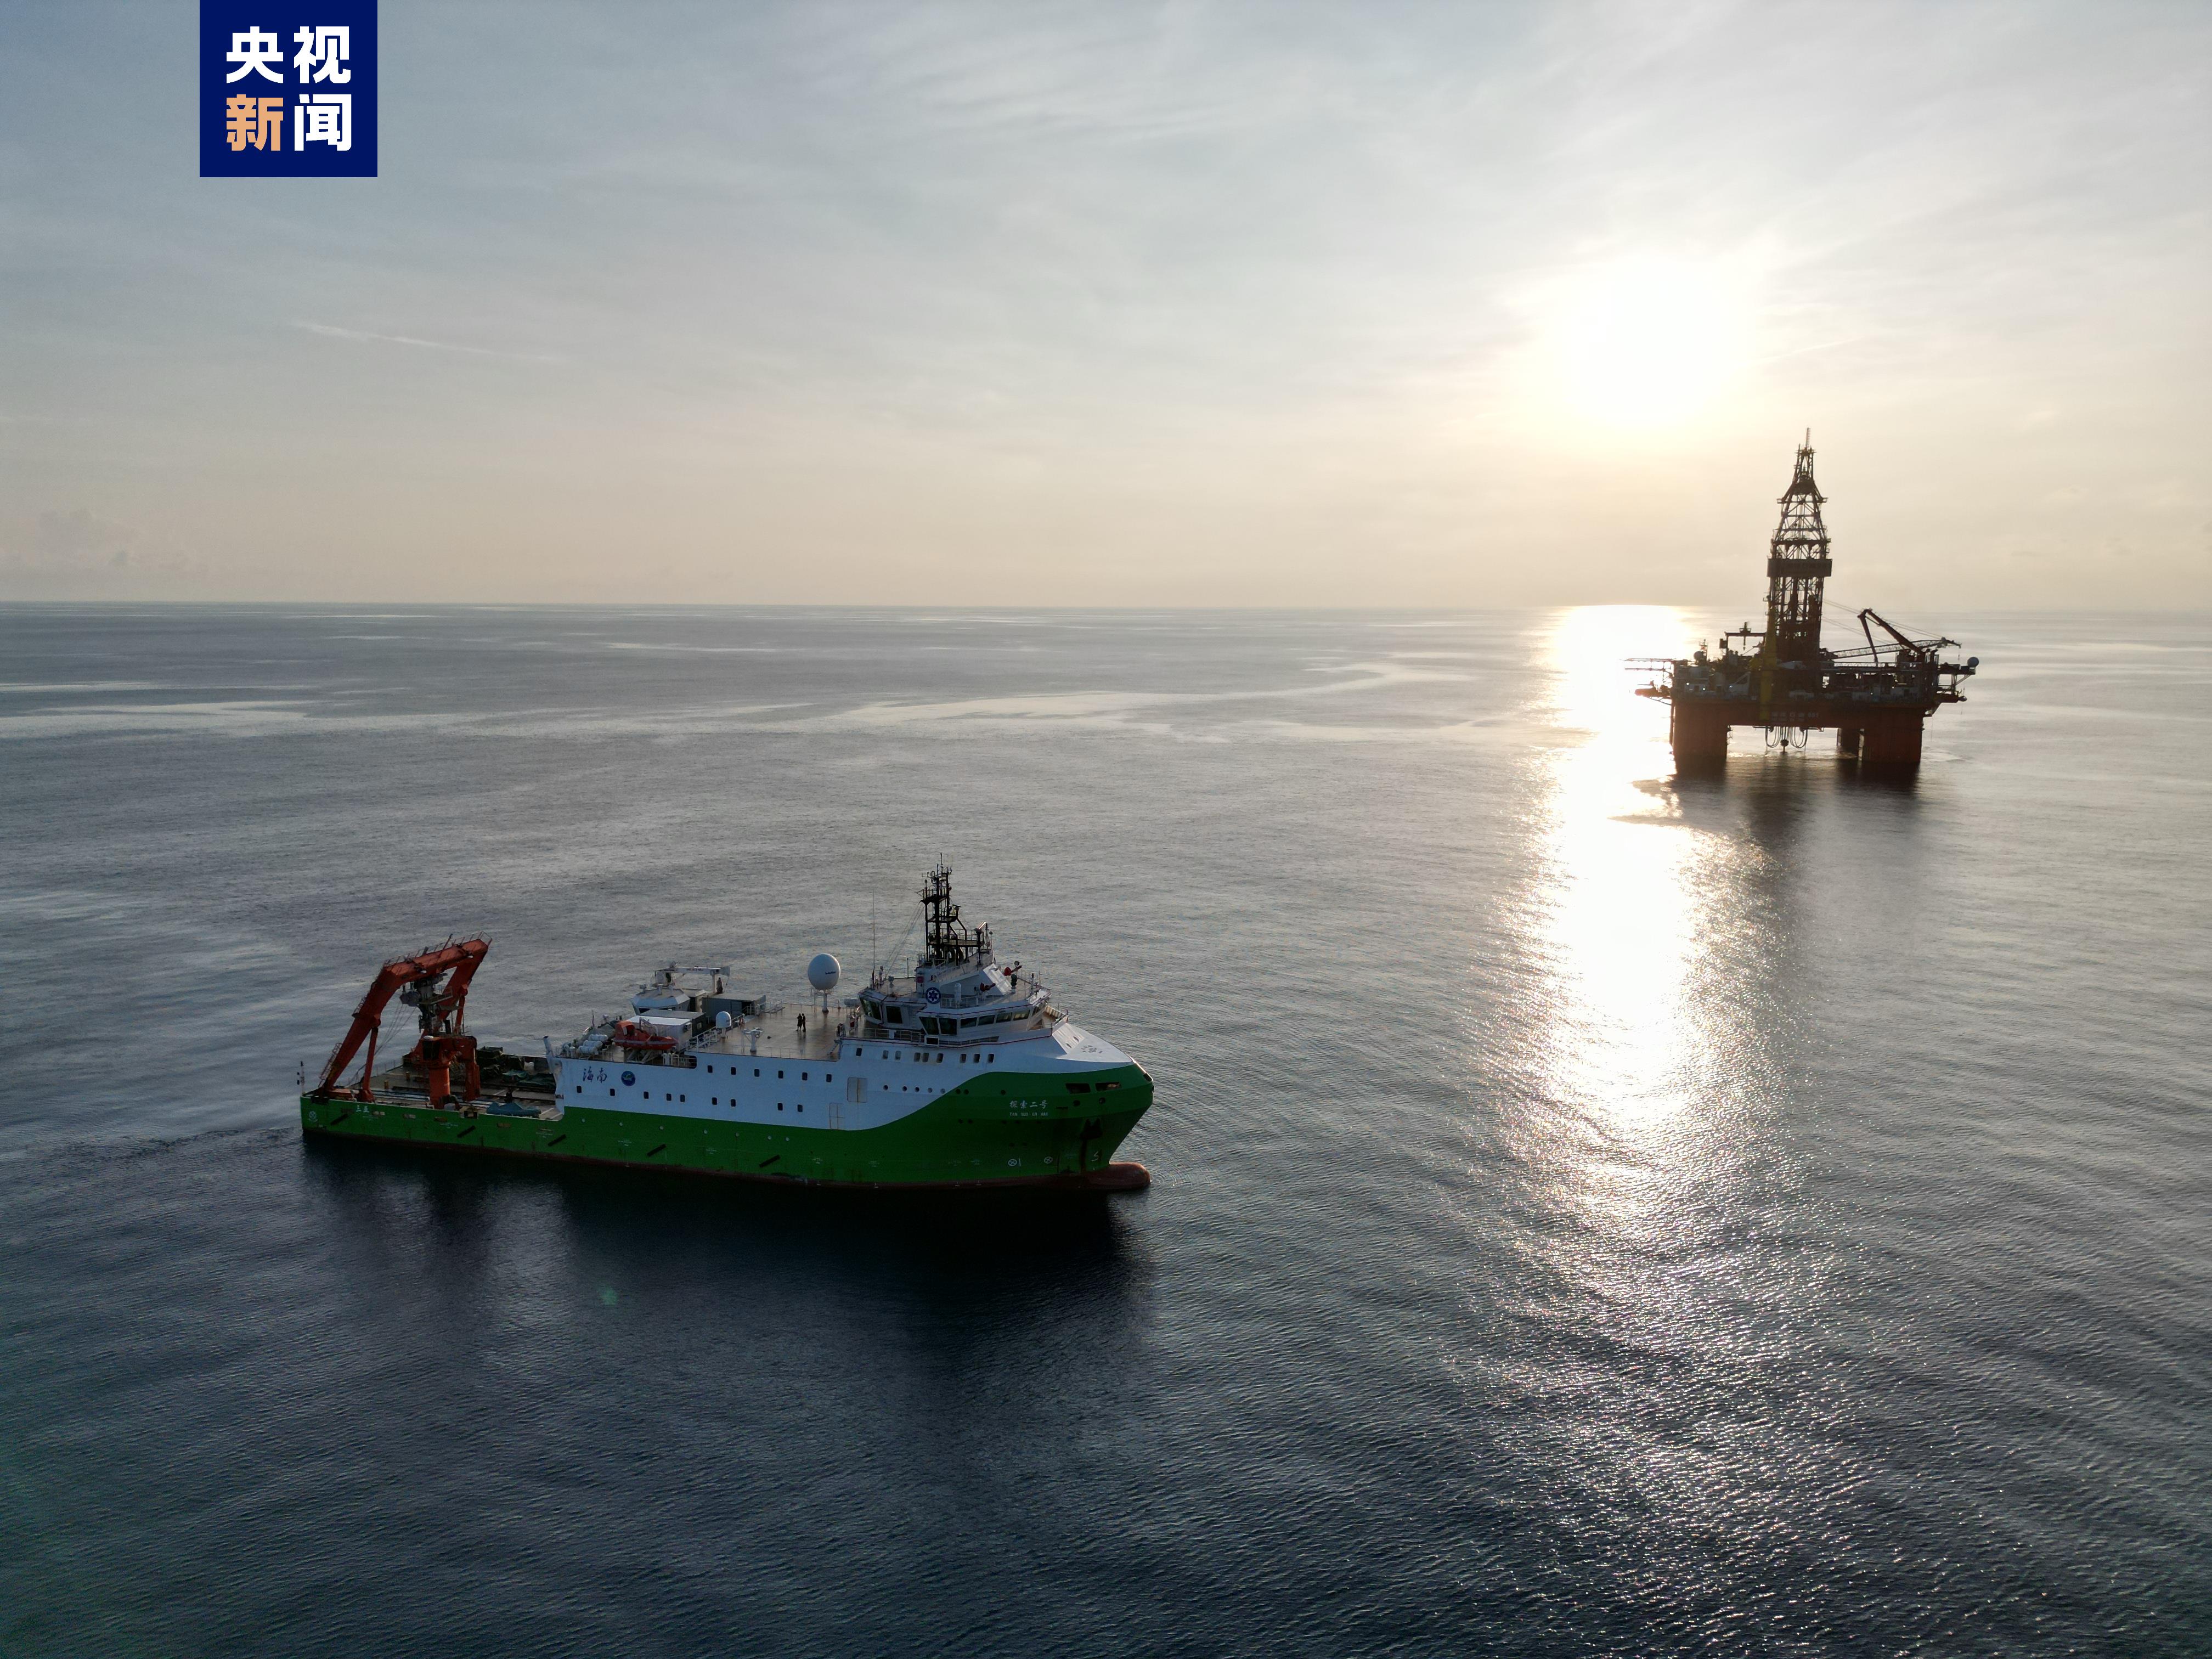 ภาพถ่ายที่ไม่ระบุวันที่นี้แสดงให้เห็นเรือสำรวจทางวิทยาศาสตร์ของจีน Explorer 2 ใกล้ Shenhai-1 ซึ่งเป็นแหล่งก๊าซธรรมชาติในทะเลลึกแห่งแรกของประเทศที่ดำเนินการเอง โดยอยู่ห่างจากเกาะไหหลำ 150 กิโลเมตร  /CMG